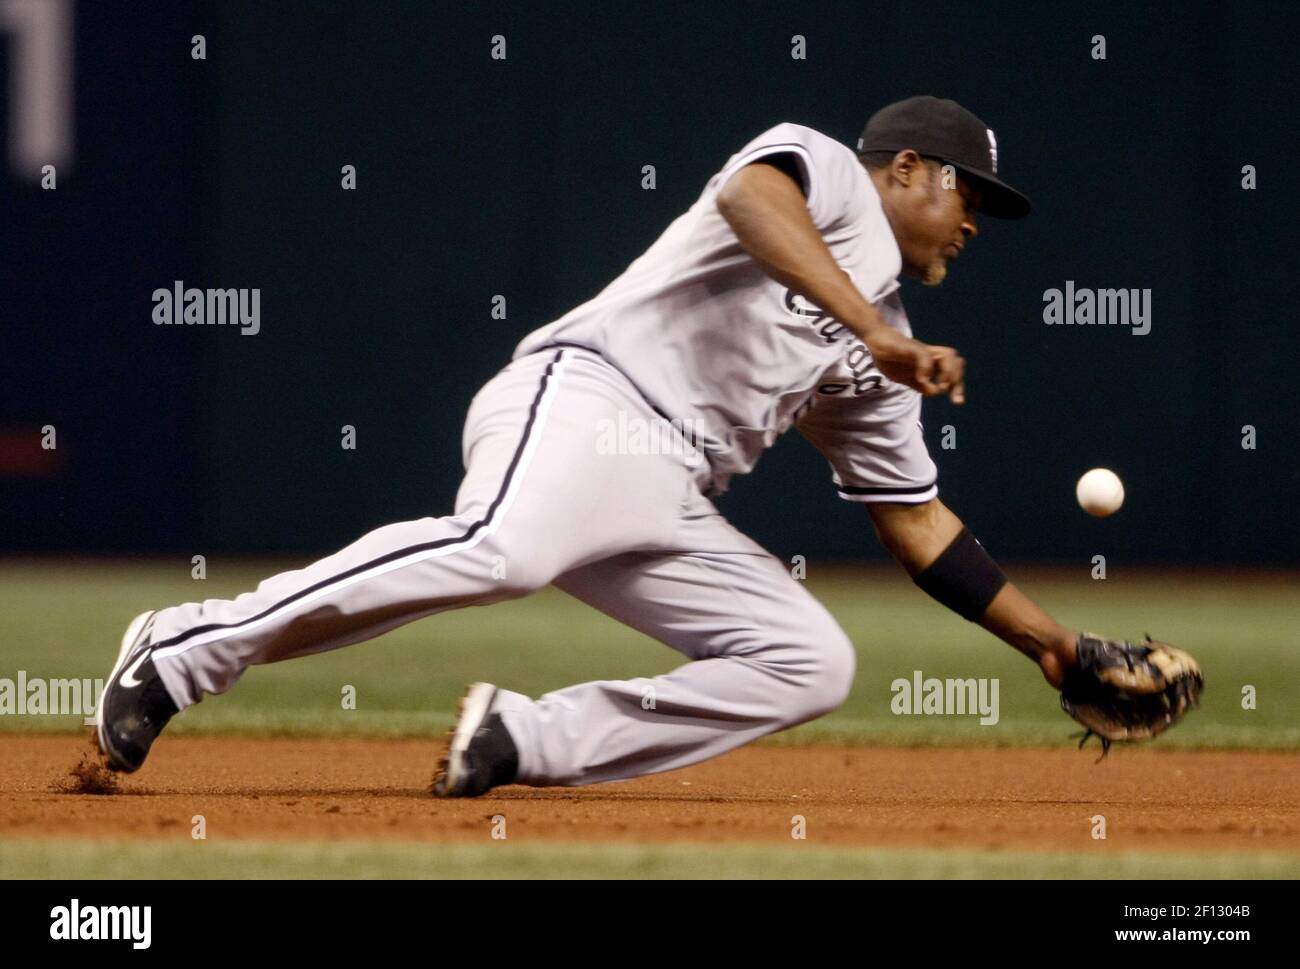 Juan Uribe von Chicago White Sox kann die zweite Inning-Single von Tampa Bay Rays Willy Aybar während des Spiels 2 der American League Divisional Series im Tropicana Field in St. Petersburg, Florida, am Freitag, den 3. Oktober 2008 nicht erreichen. (Foto von Scott Strazzante/Chicago Tribune/MCT/Sipa USA) Stockfoto